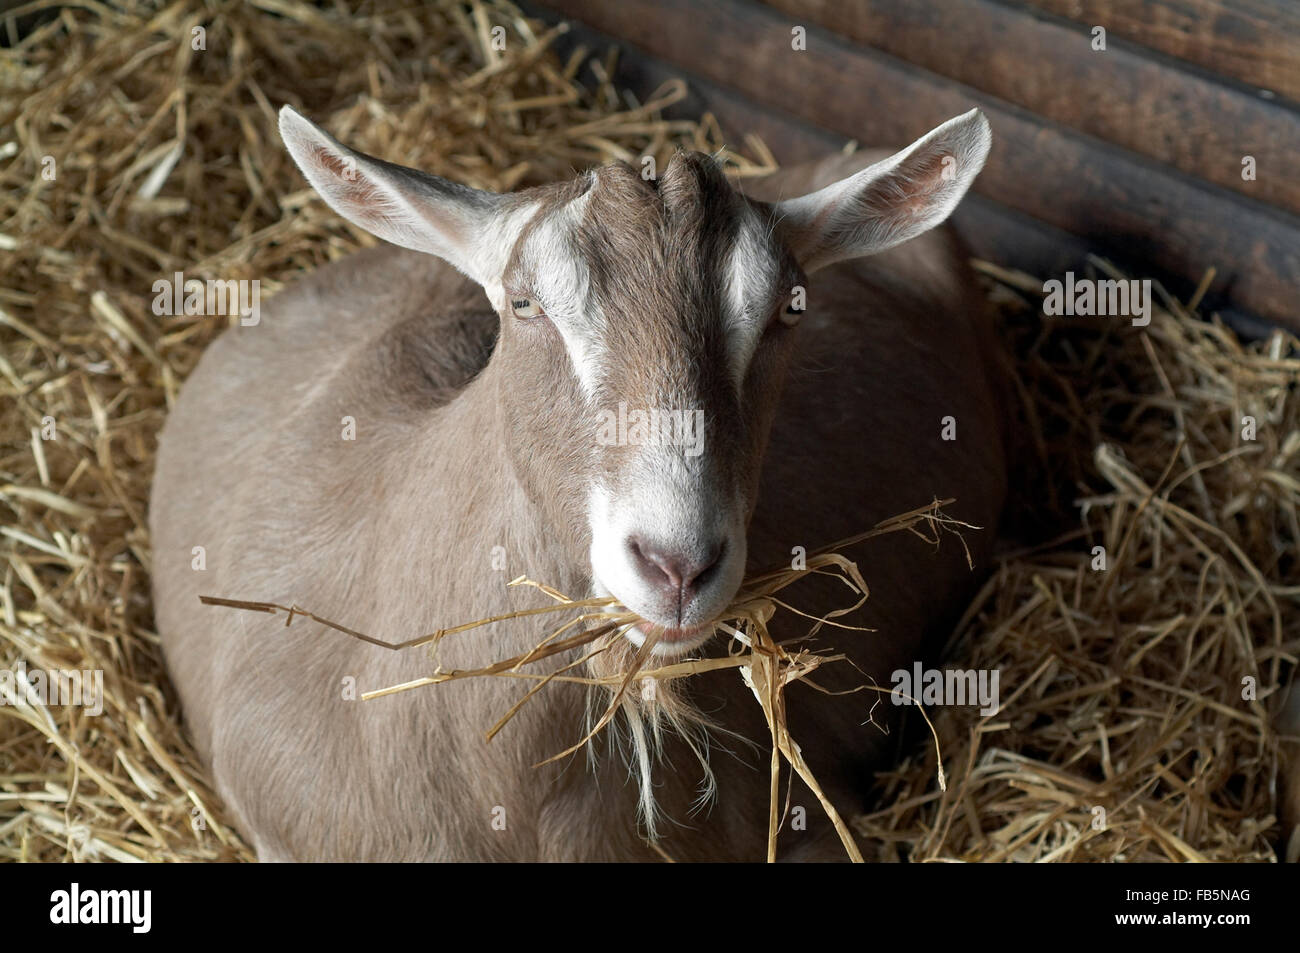 Dans le hangar de chèvre avec de la paille dans la bouche l'Angleterre Angleterre europe Banque D'Images